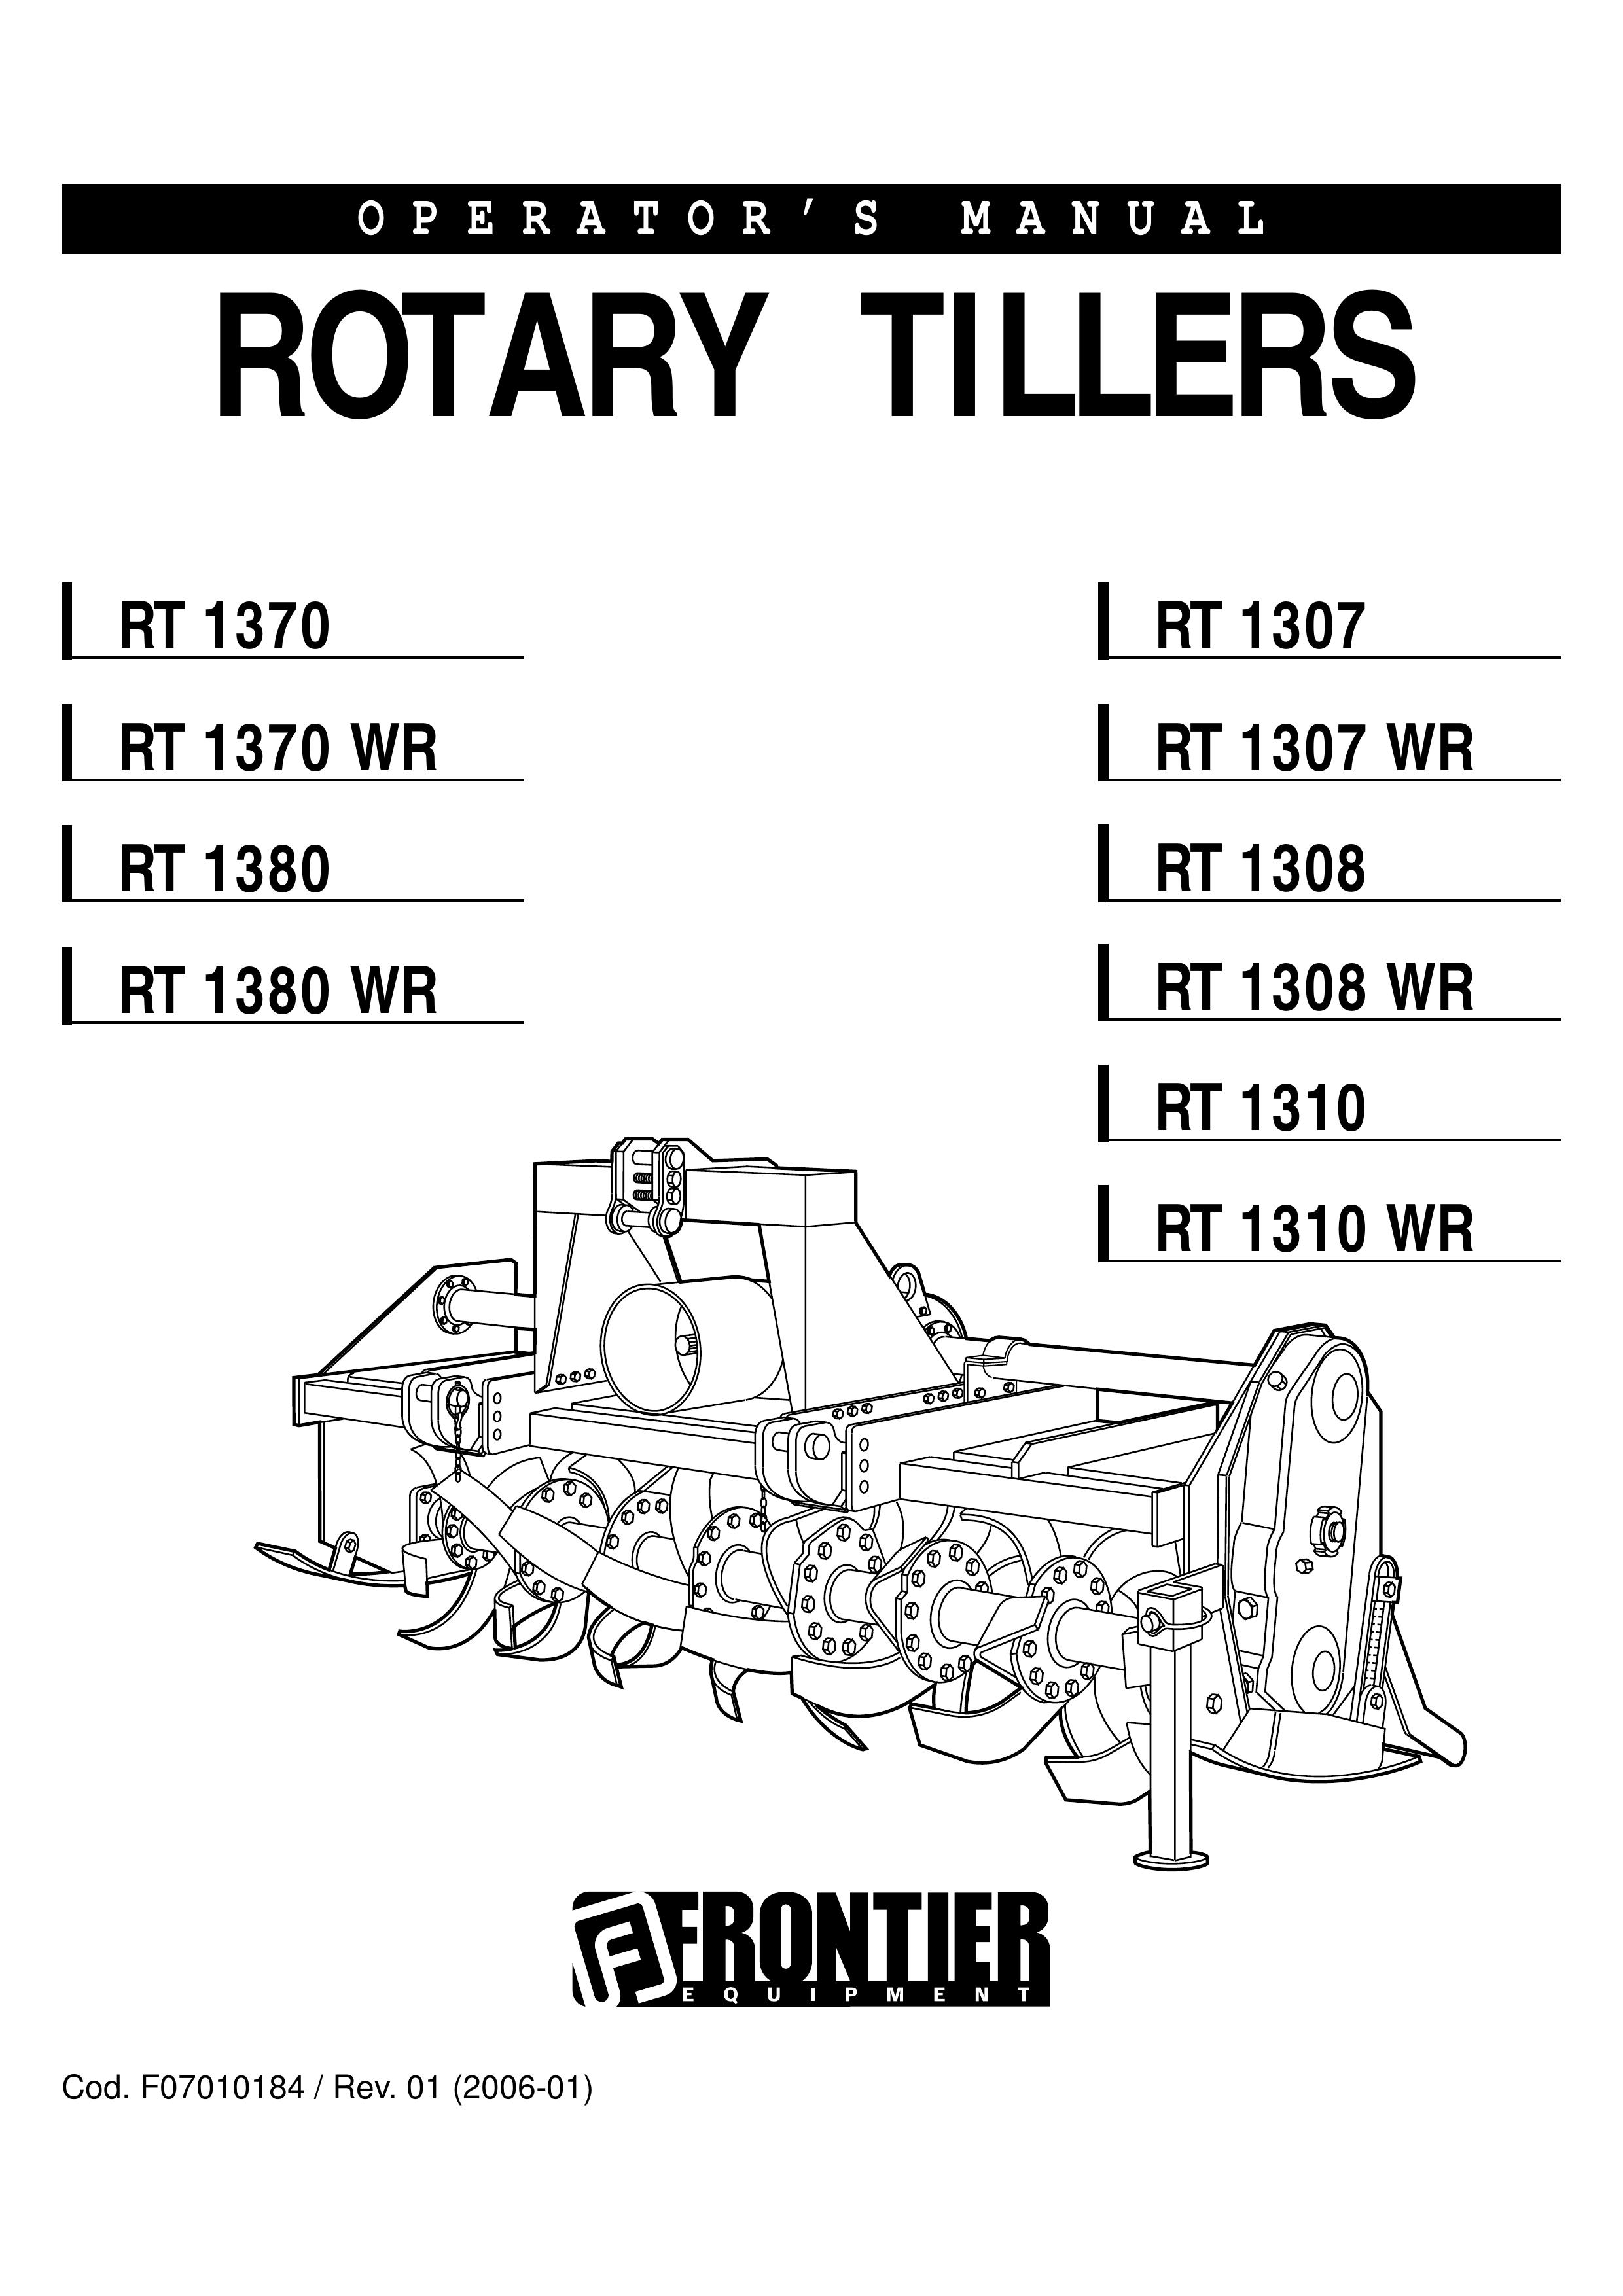 John Deere RT 1310 WR Tiller User Manual